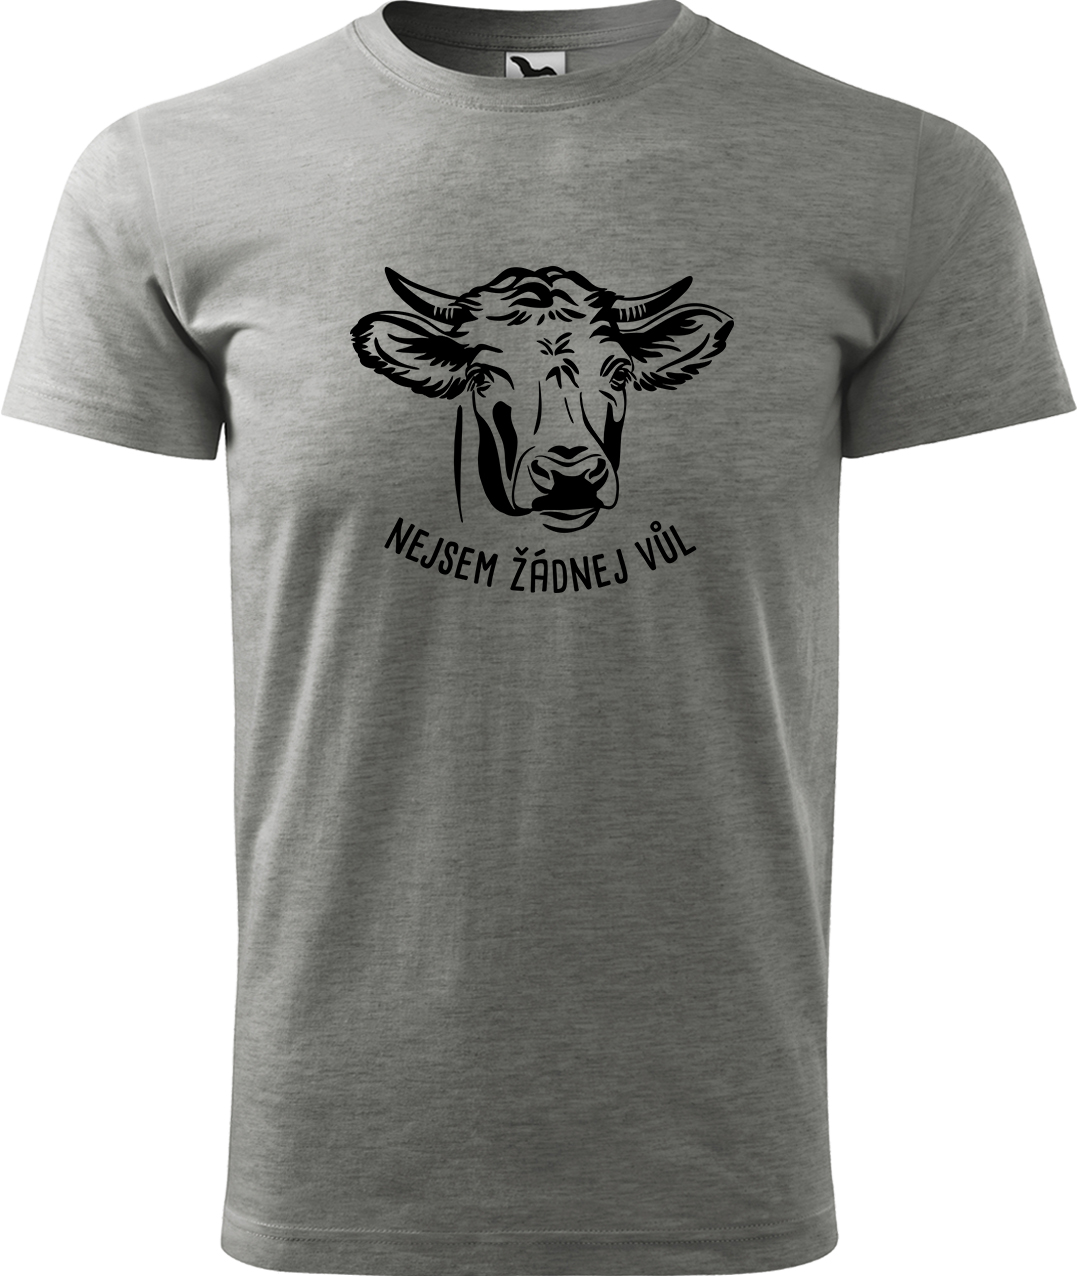 Pánské tričko s krávou - Nejsem žádnej vůl Velikost: 2XL, Barva: Tmavě šedý melír (12)